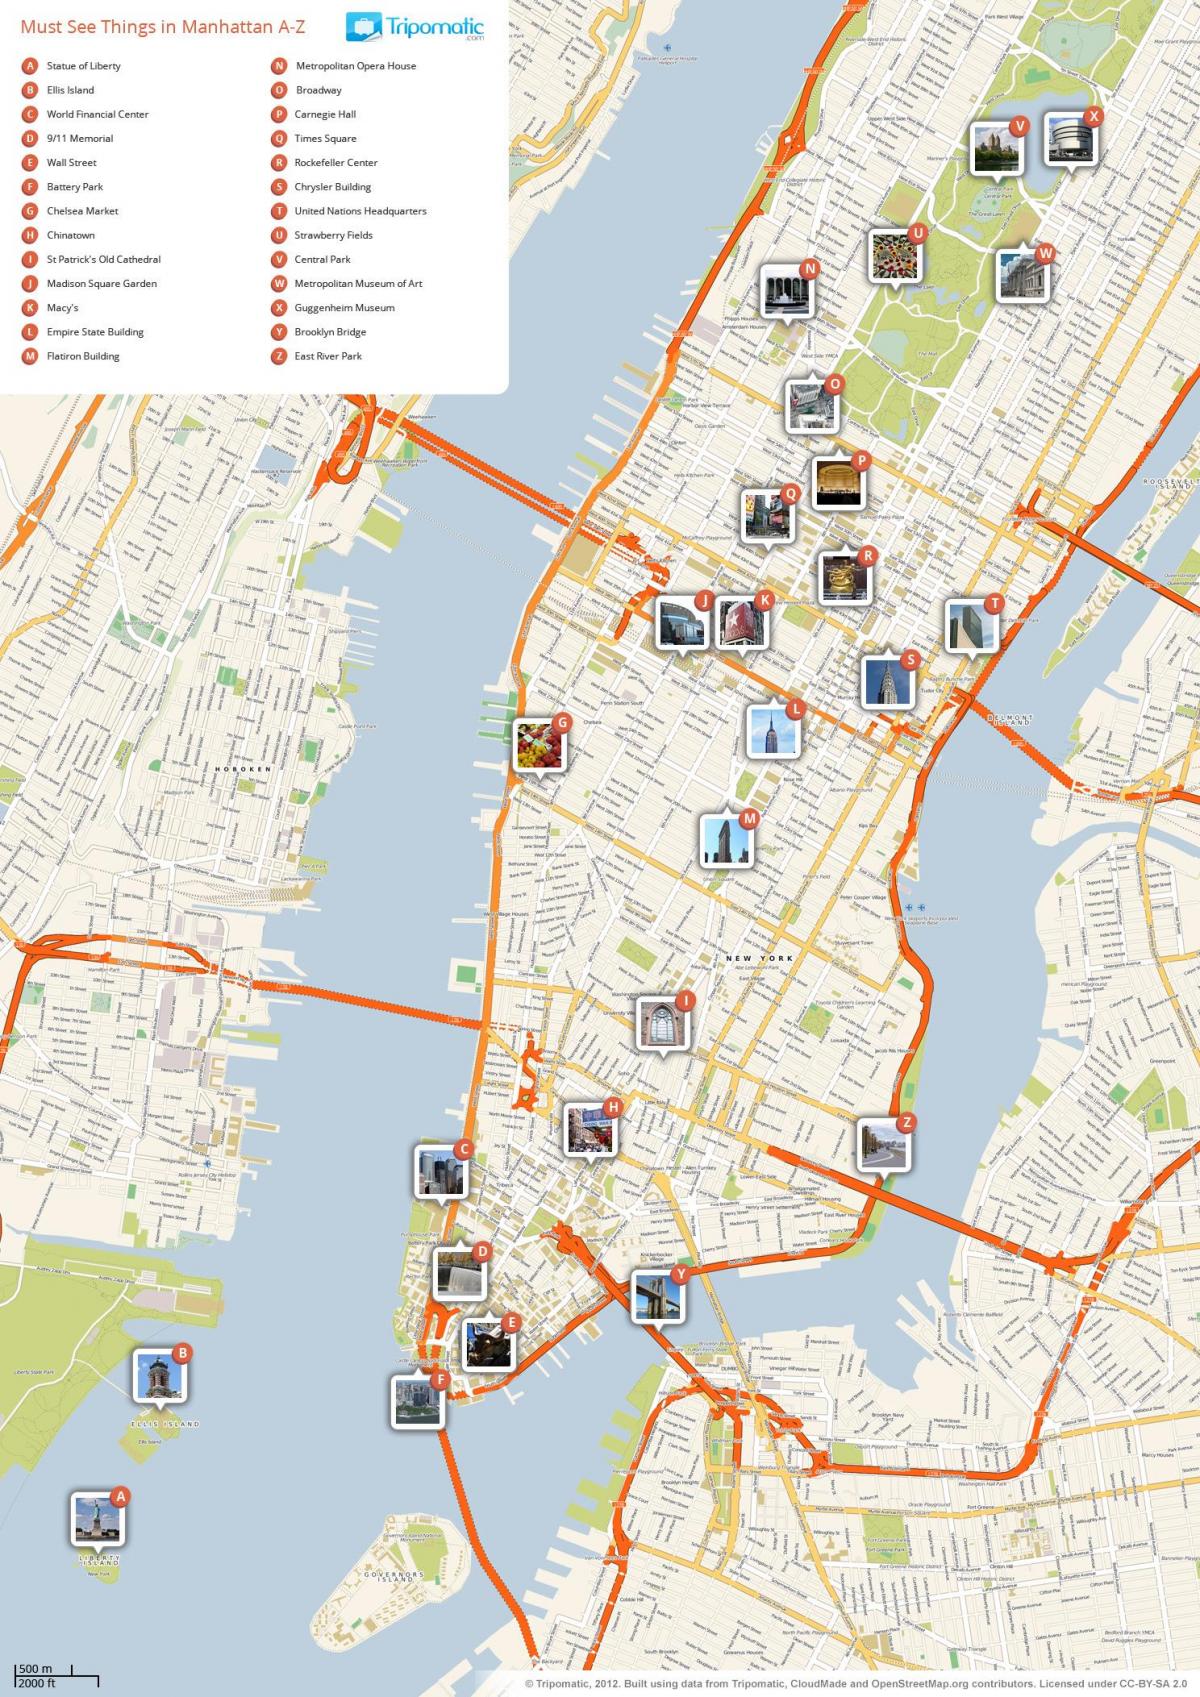 térkép Manhattan mutatja turista látványosságok